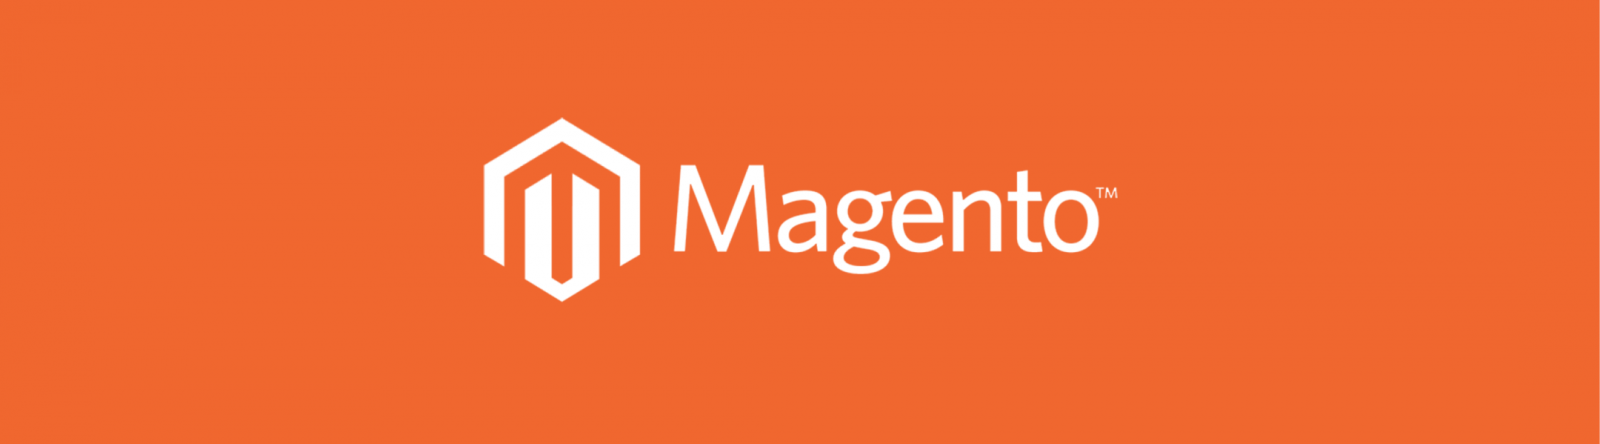 Разработка интернет-магазина Magento